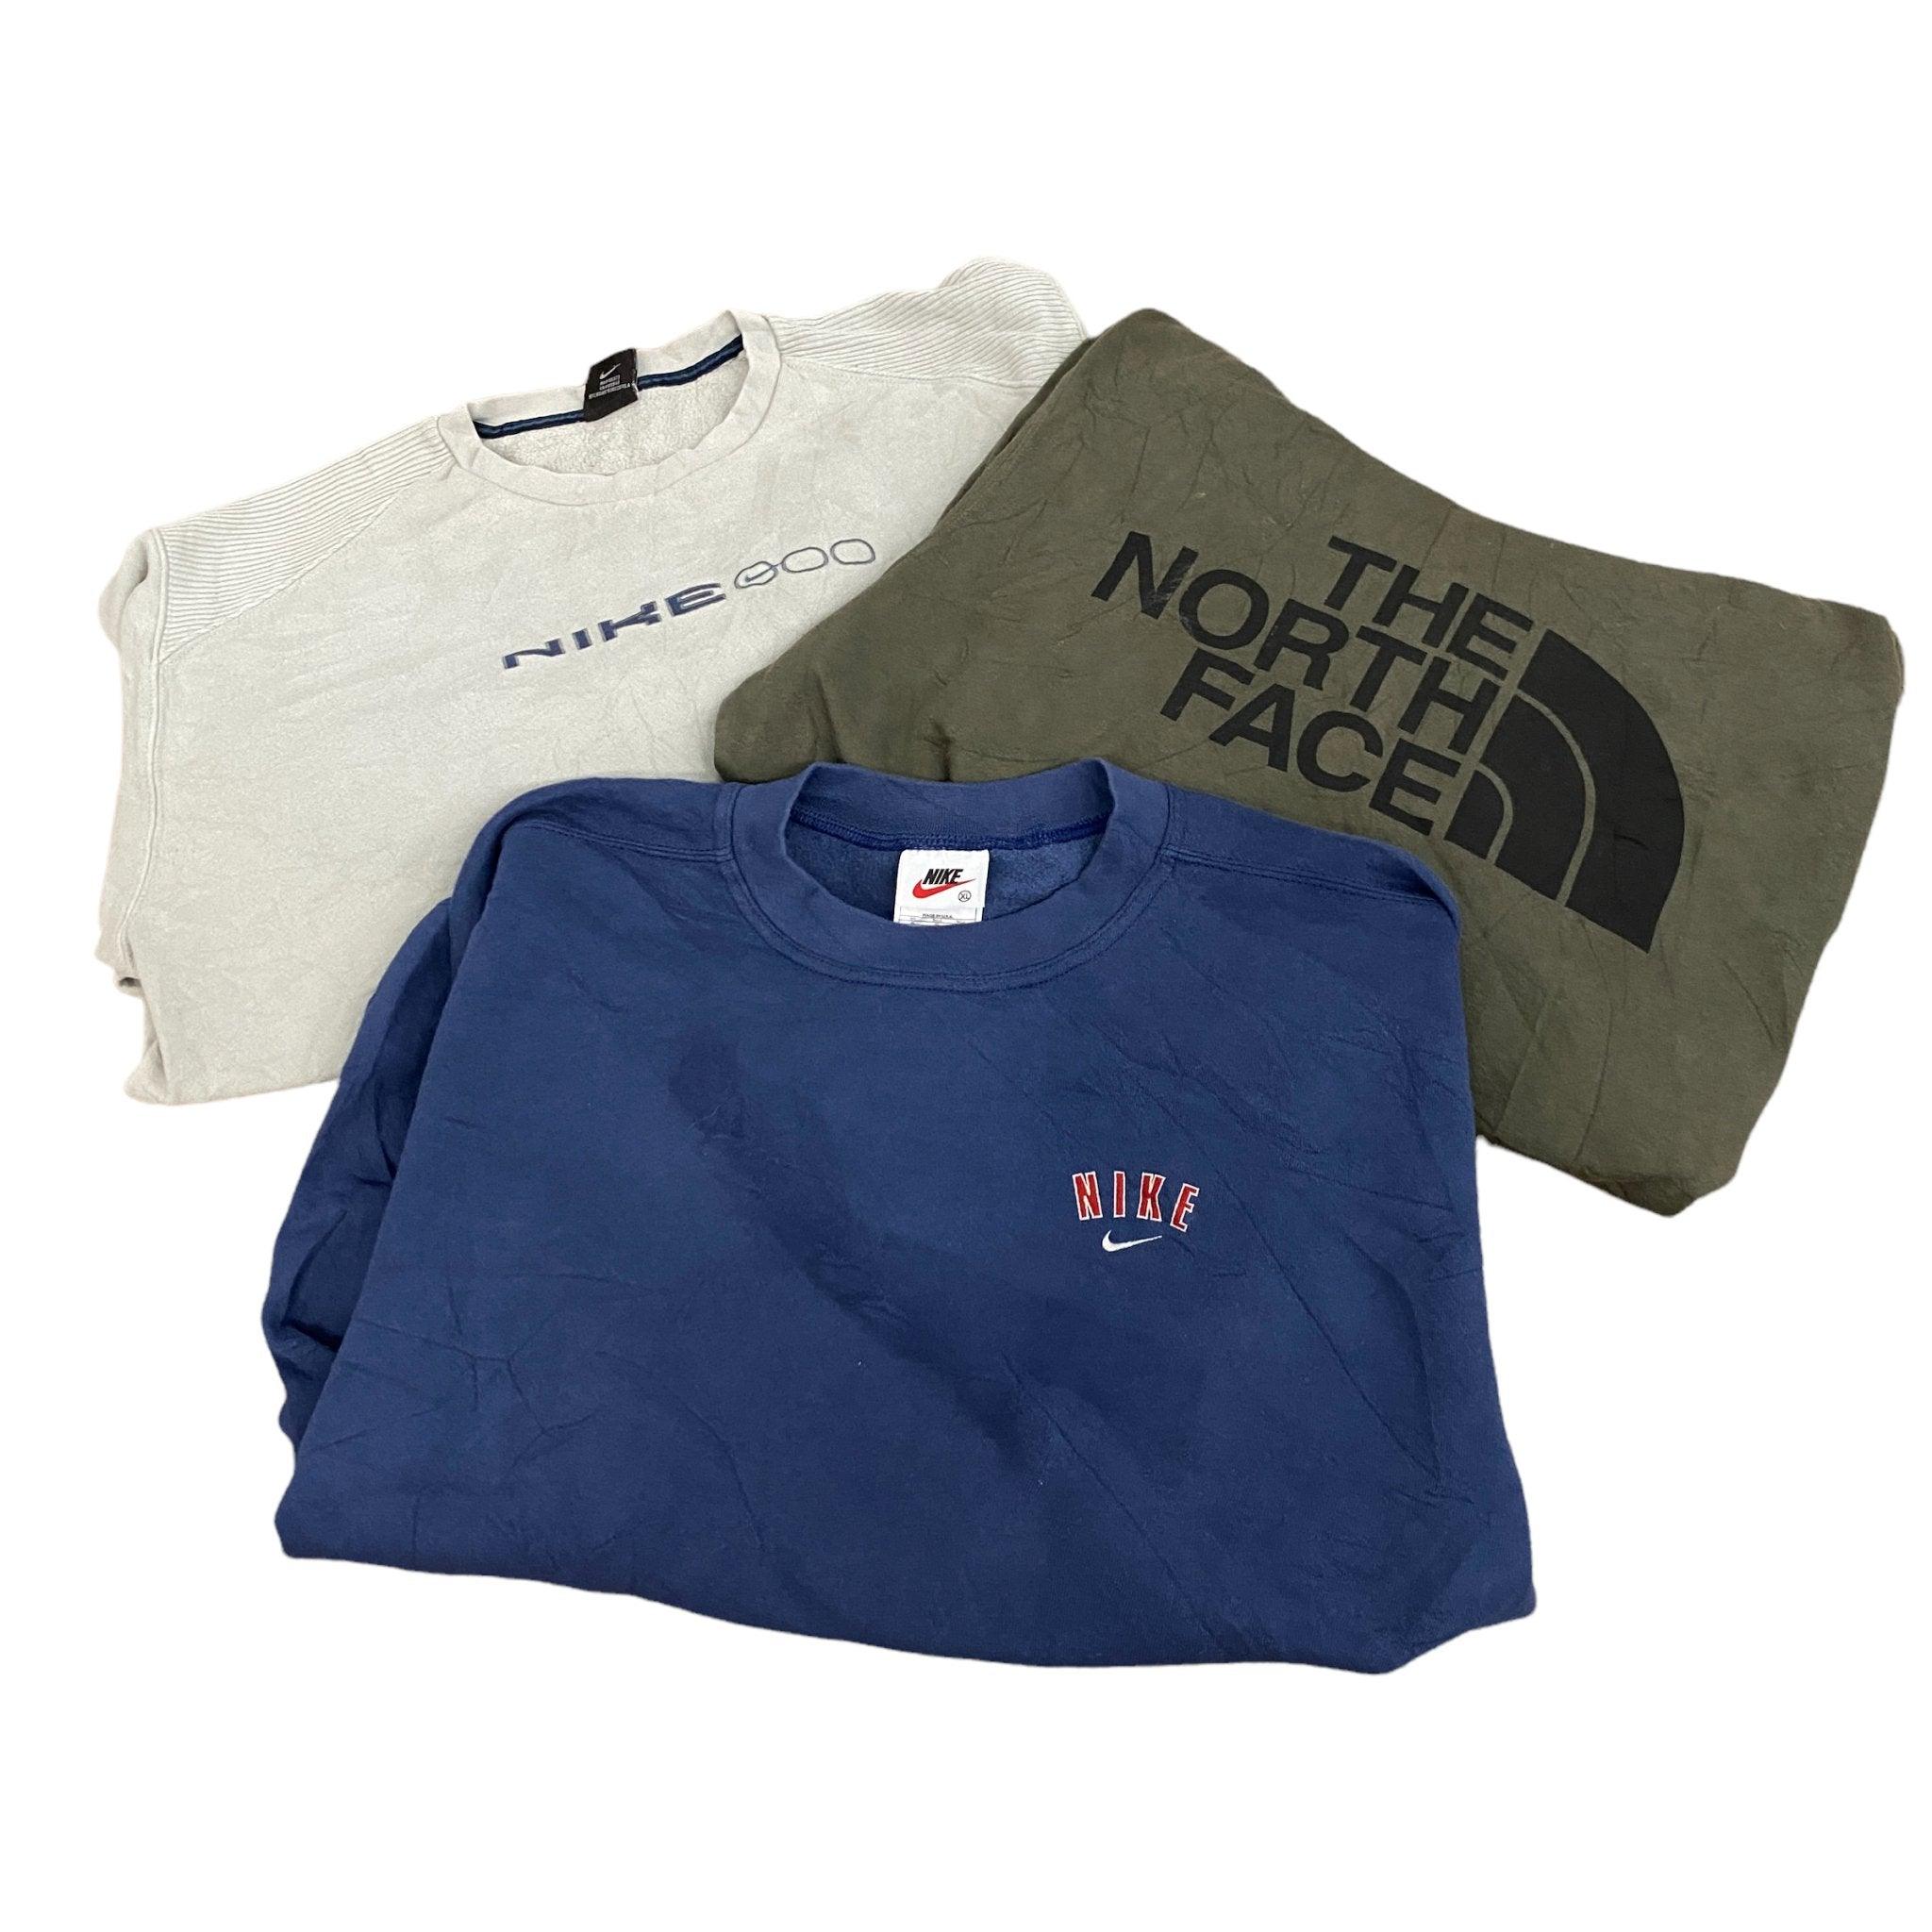 Wholesale Branded Sweatshirt - Visione Vintage